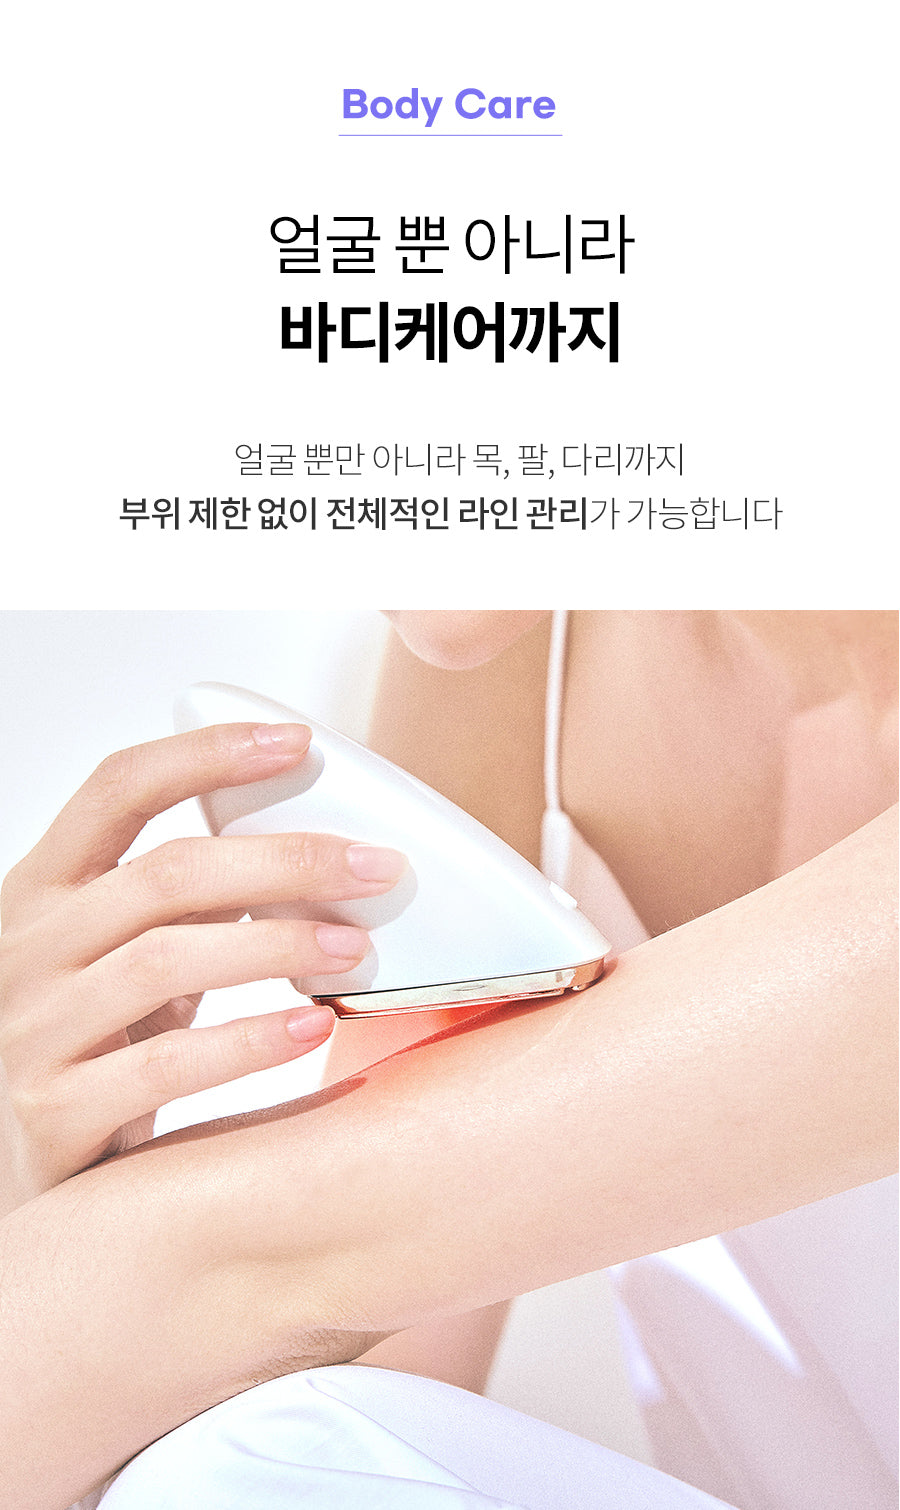 얼굴라인 괄사 마사지기 피부케어 홈케어 화장품 KOREAN COSMETICS BUEATY